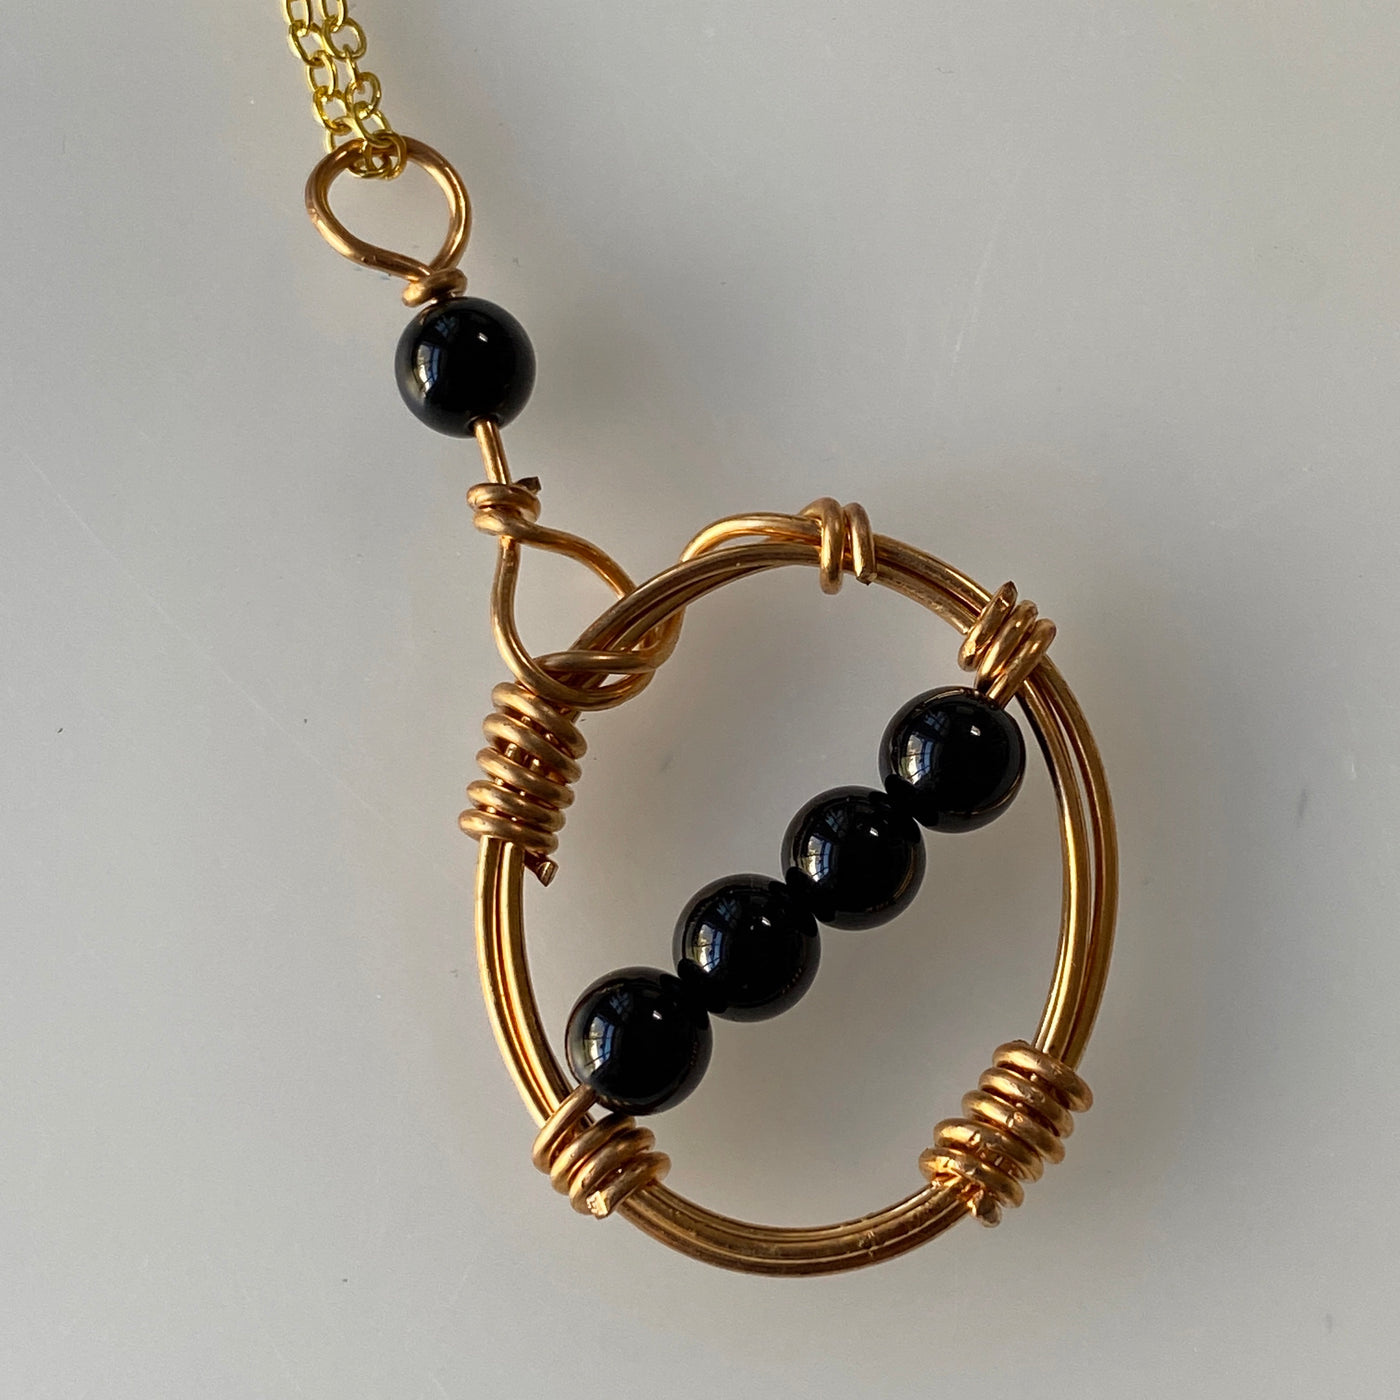 Mit Onyx und Gold gefüllte Halskette aus der Lines-Kollektion.